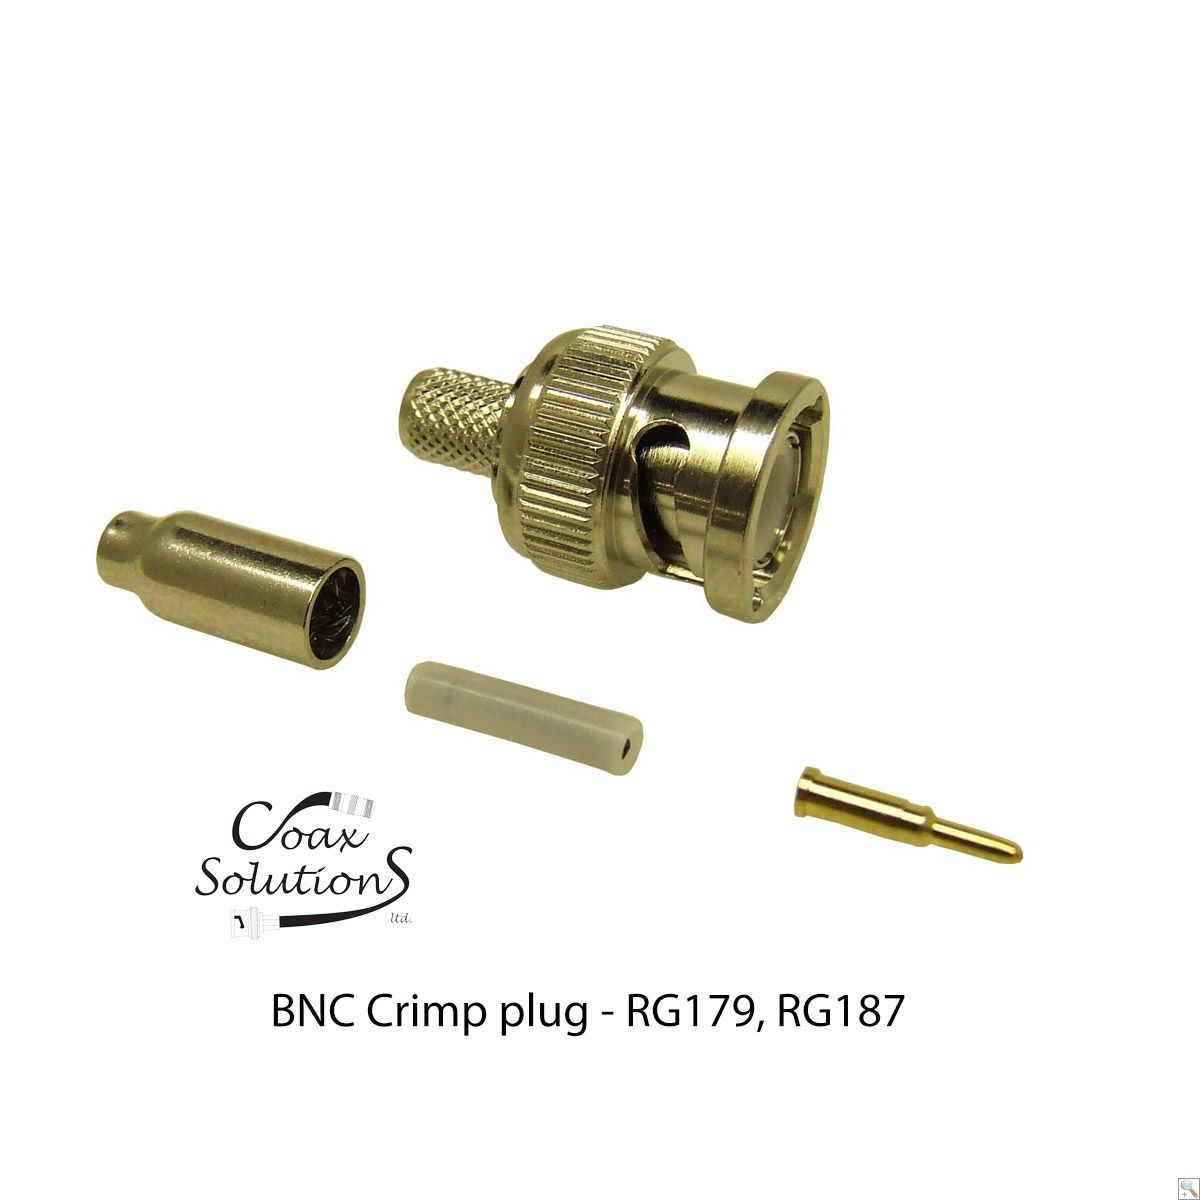 BNC Crimp plug RG179, RG187